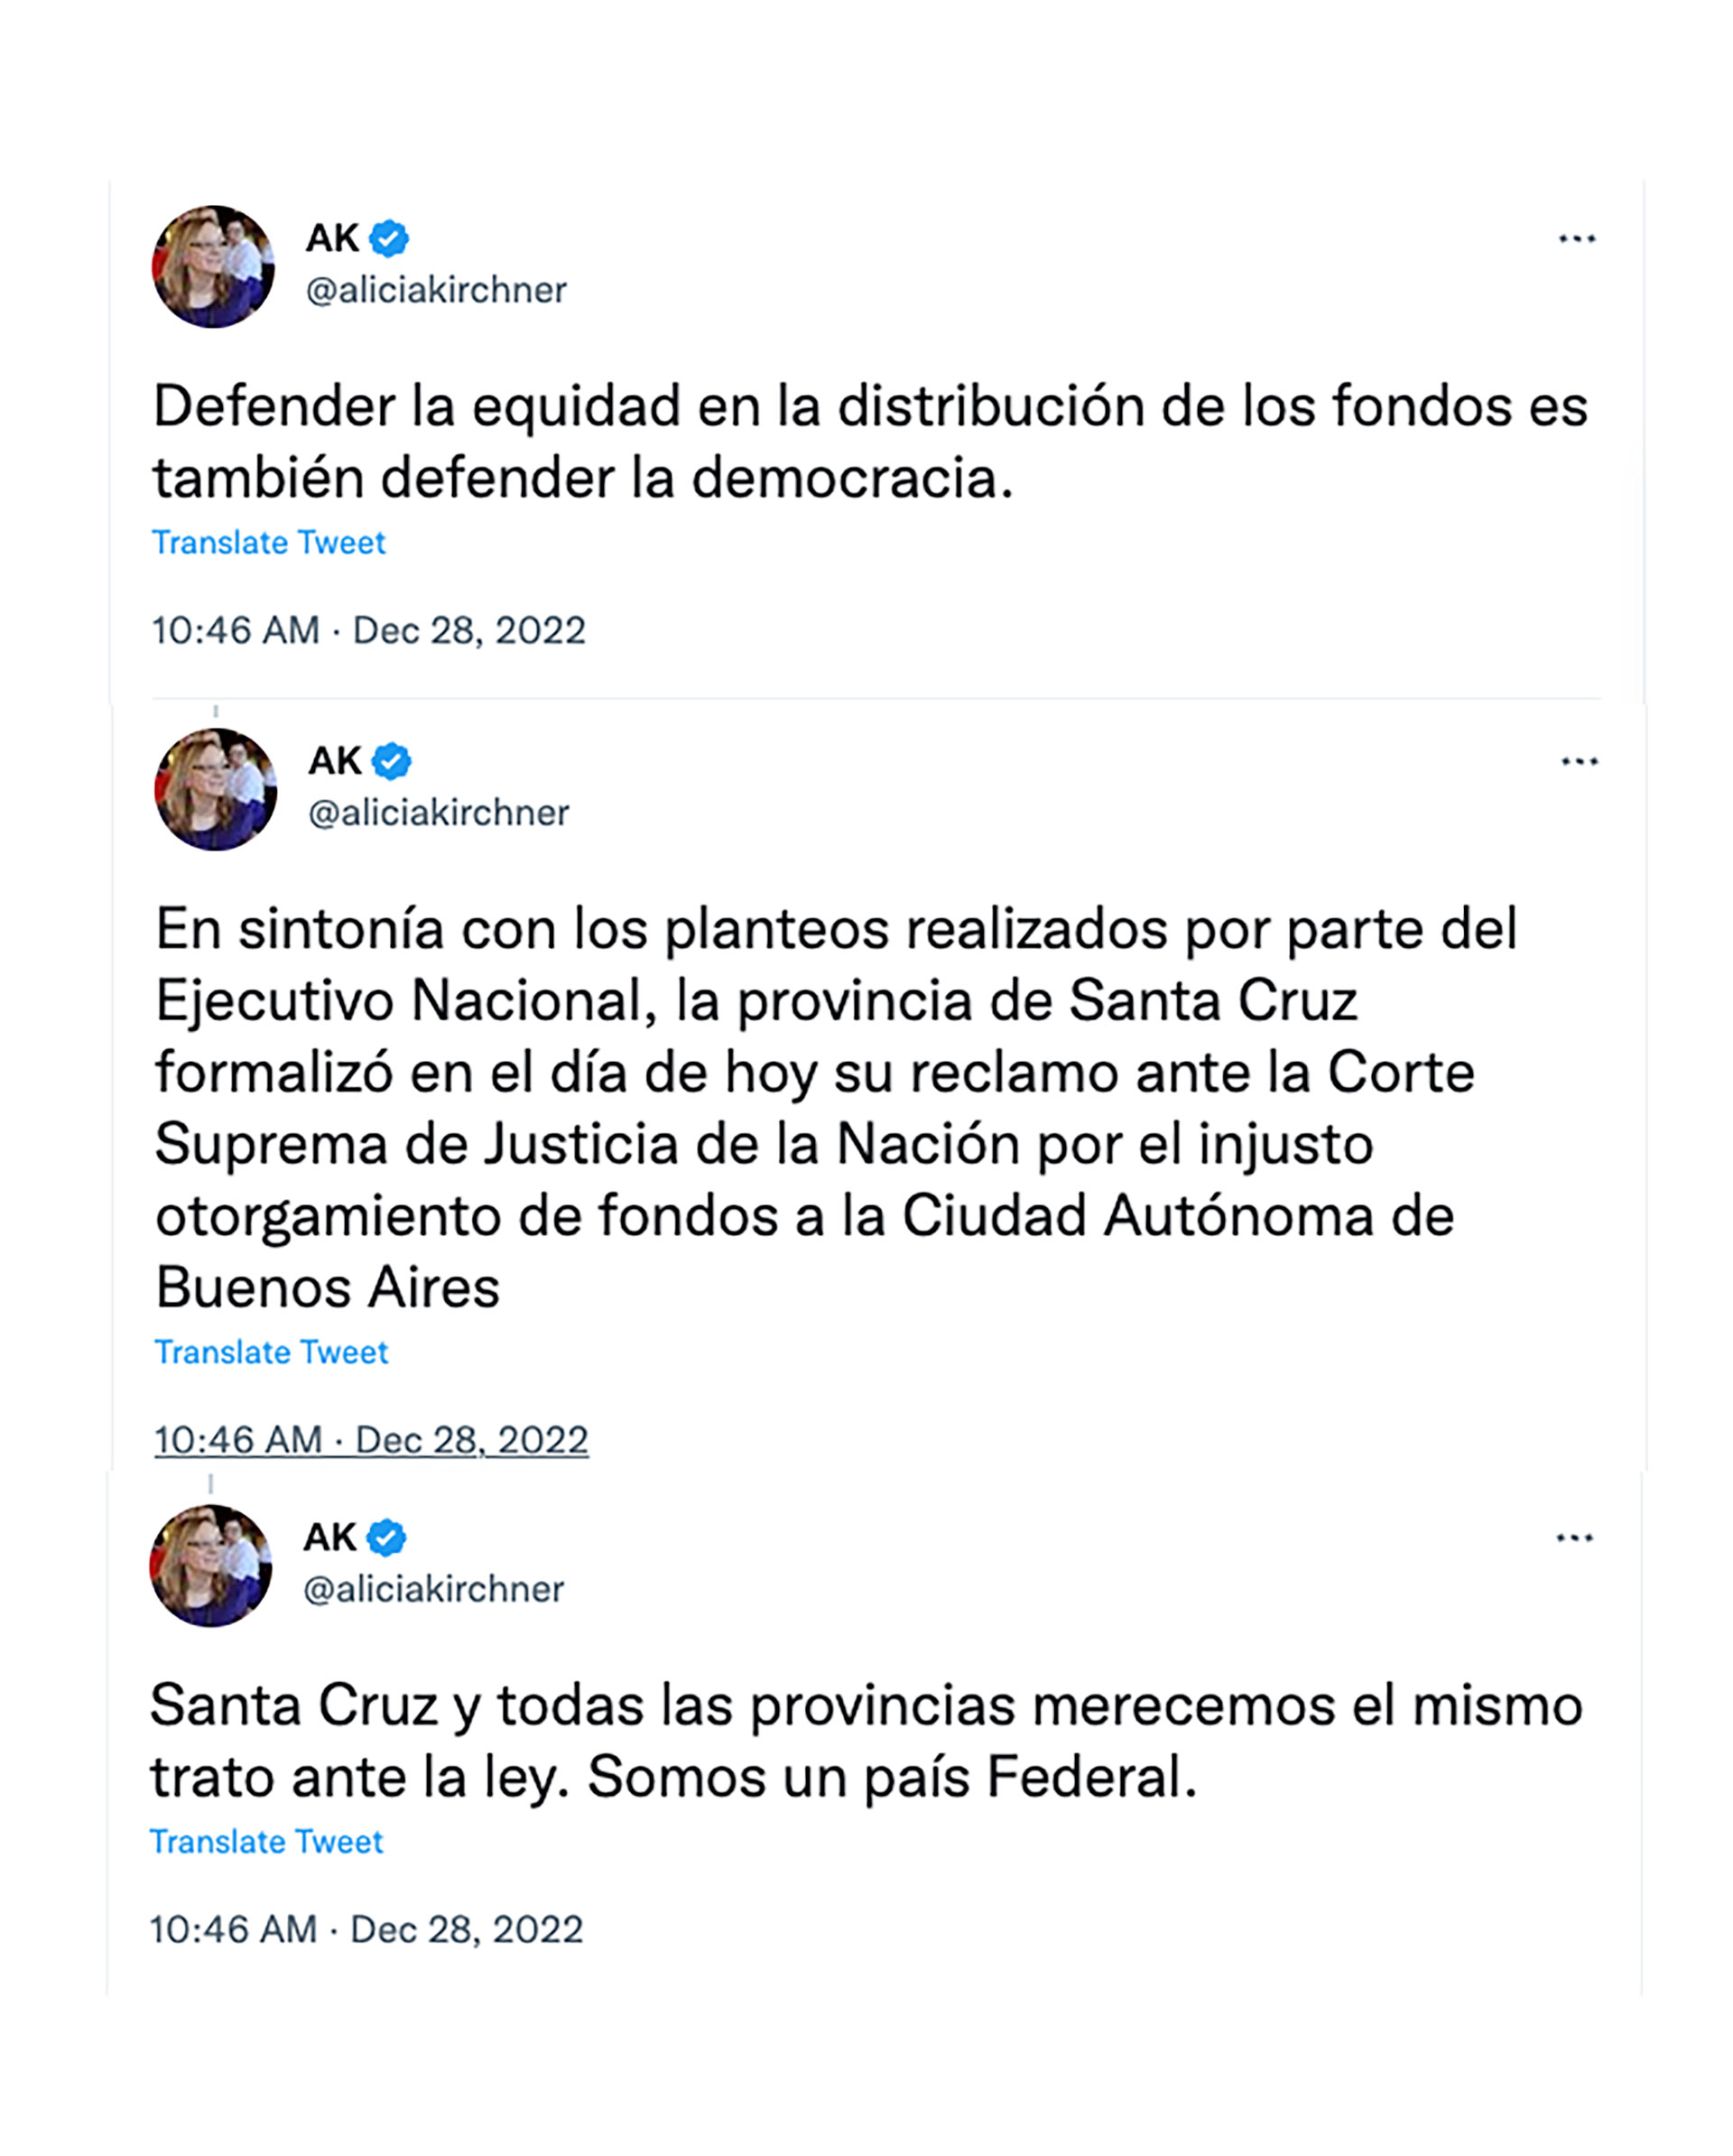 El mensaje de apoyo de Alicia Kirchner a la decisión del presidente Alberto Fernández 